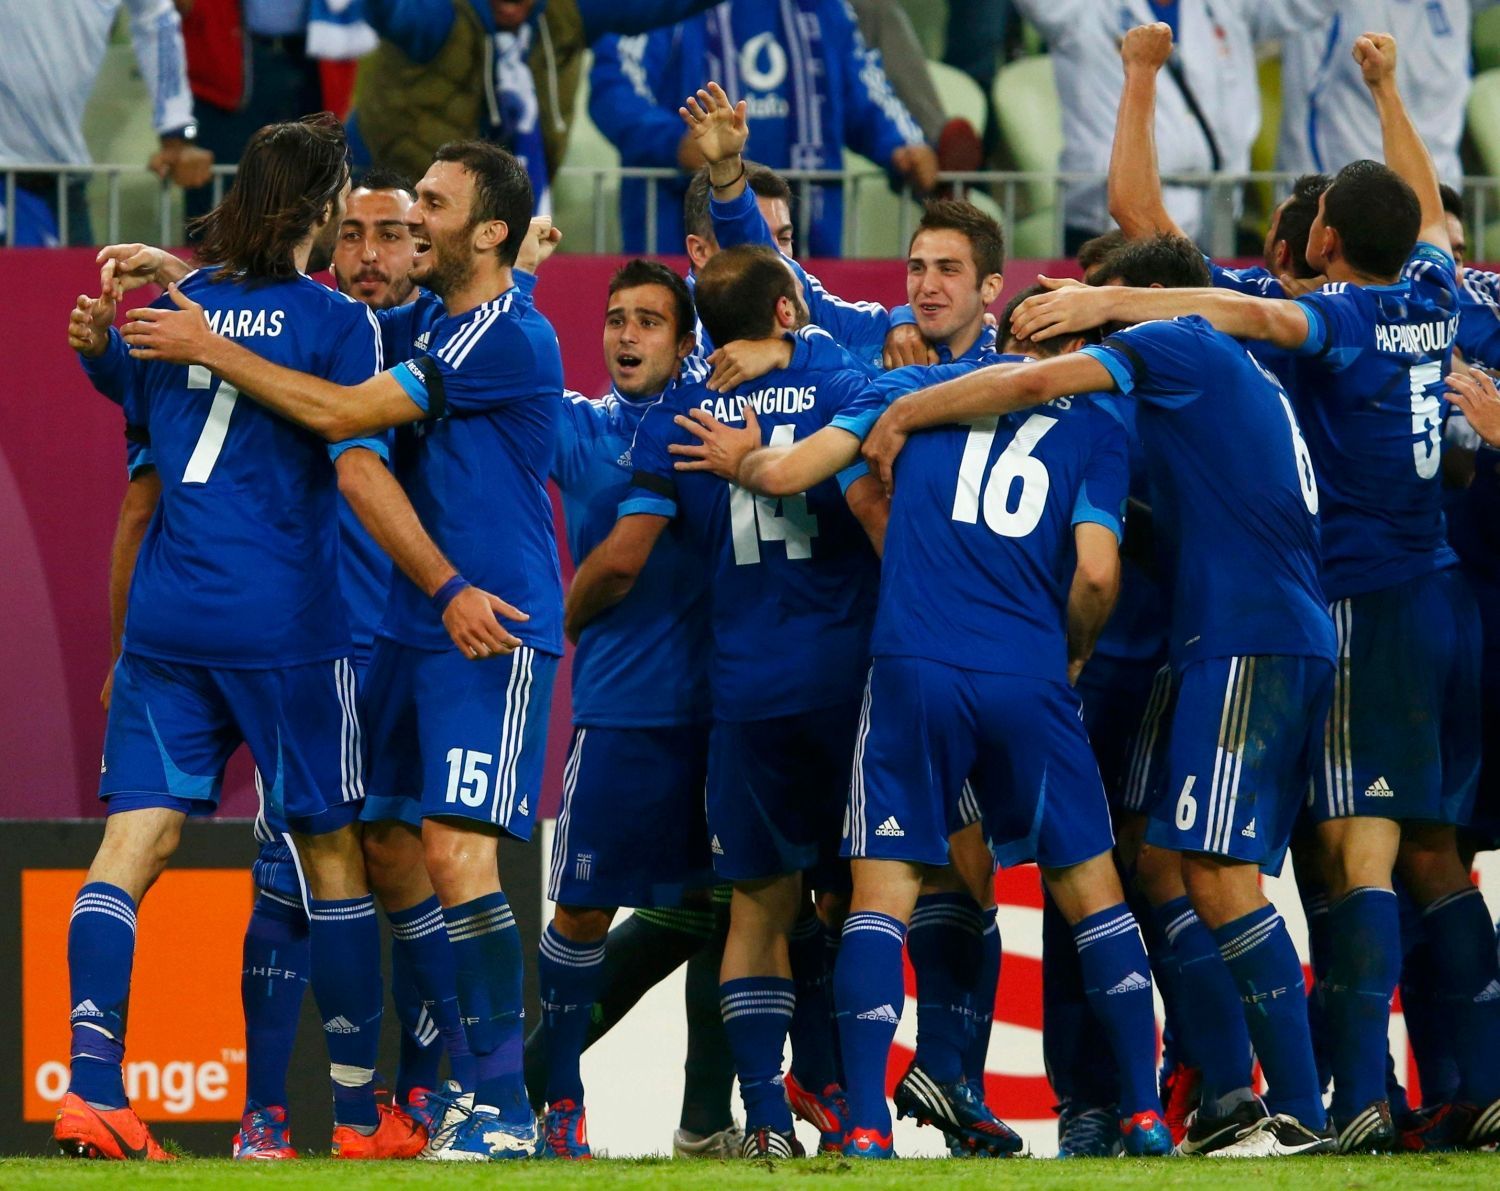 Řekové slaví gól Jorgose Samarase během utkání Německo - Řecko ve čtvrtfinále Eura 2012